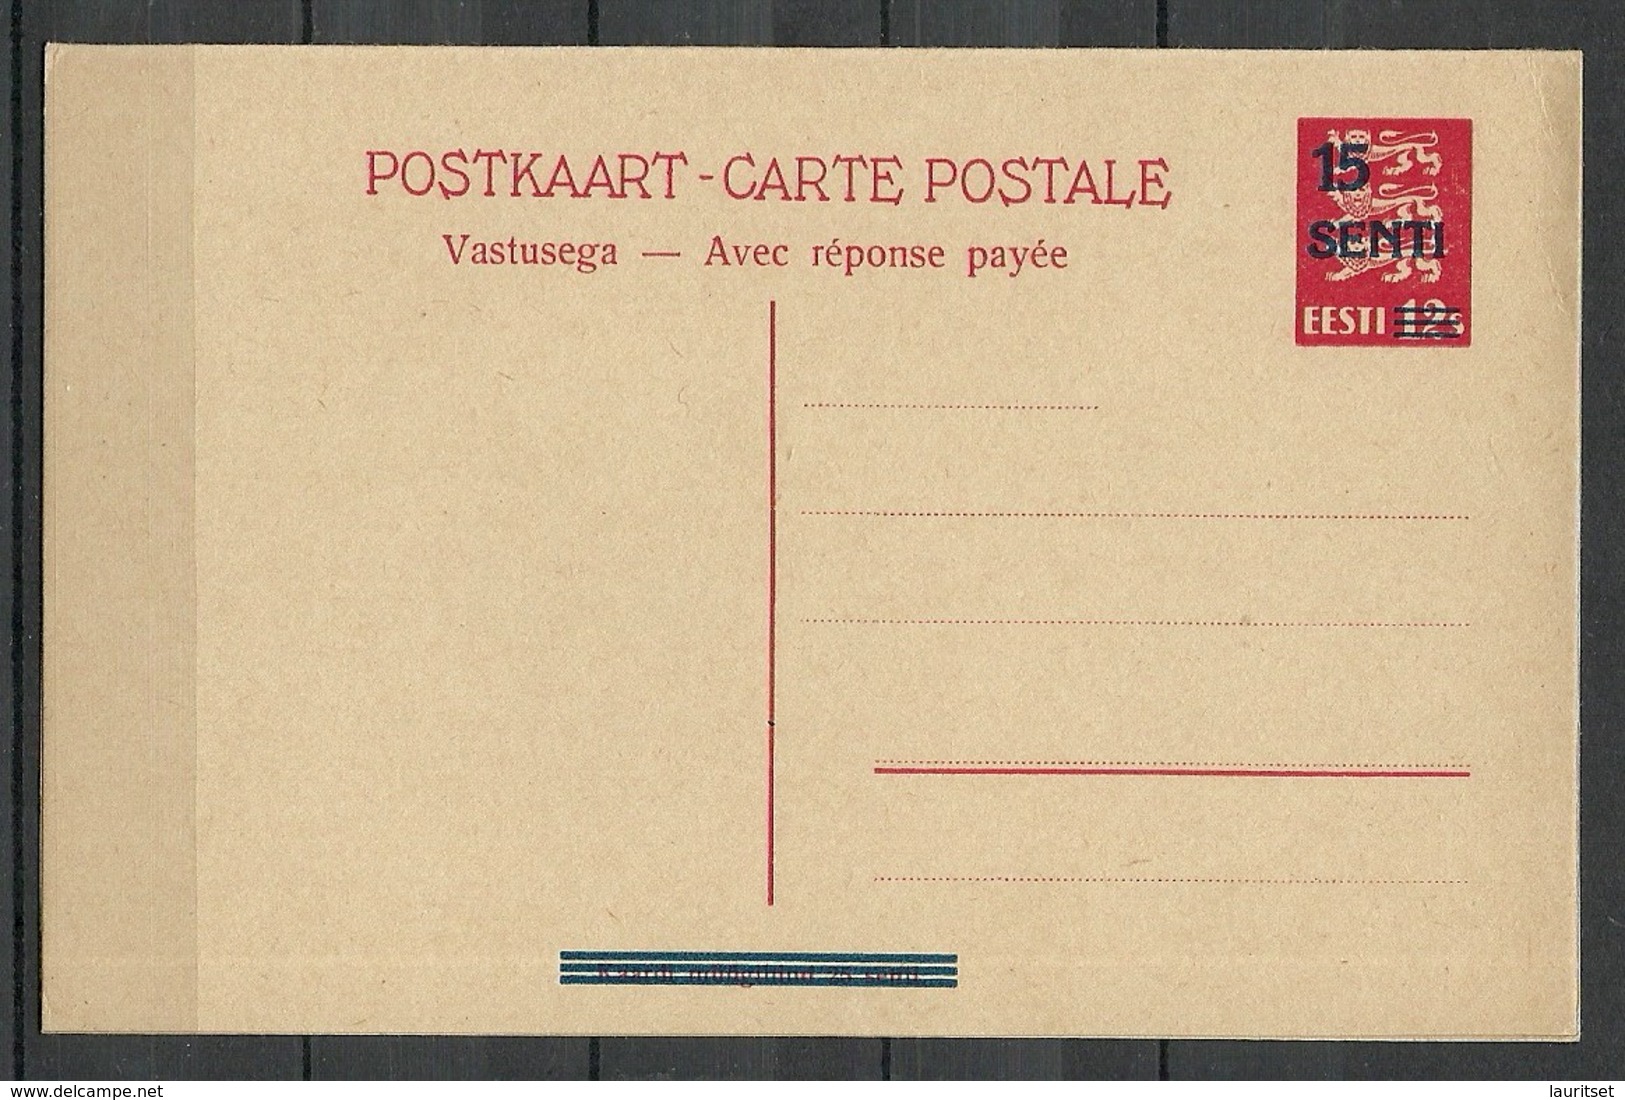 Estland Estonia 1934 Postal Stationery Mit Antwortteil With Response Part Ganzsache Sauber Ungebraucht/unused - Estonia